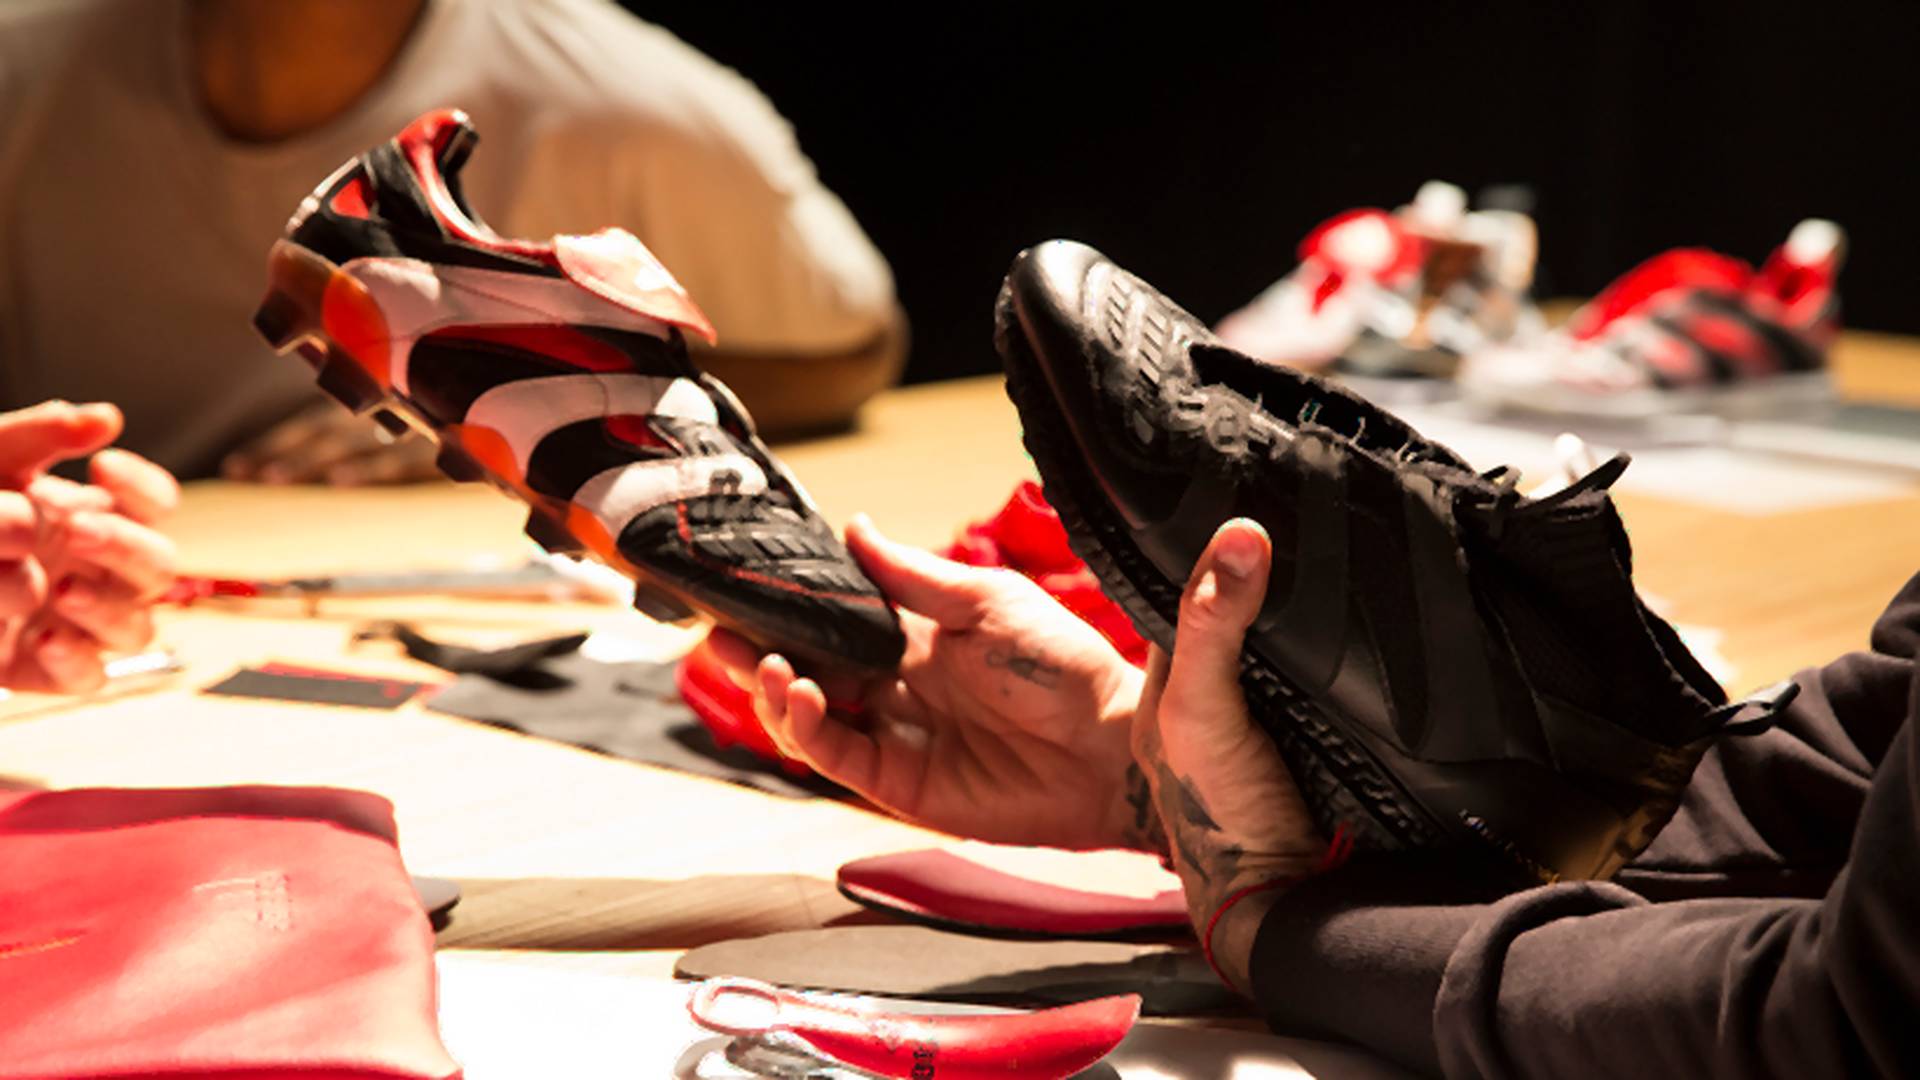 Adidas dołącza do wojny przeciw plastikom i rozpoczyna rewolucję. Ich ubrania i buty będą w większości z recyklingu